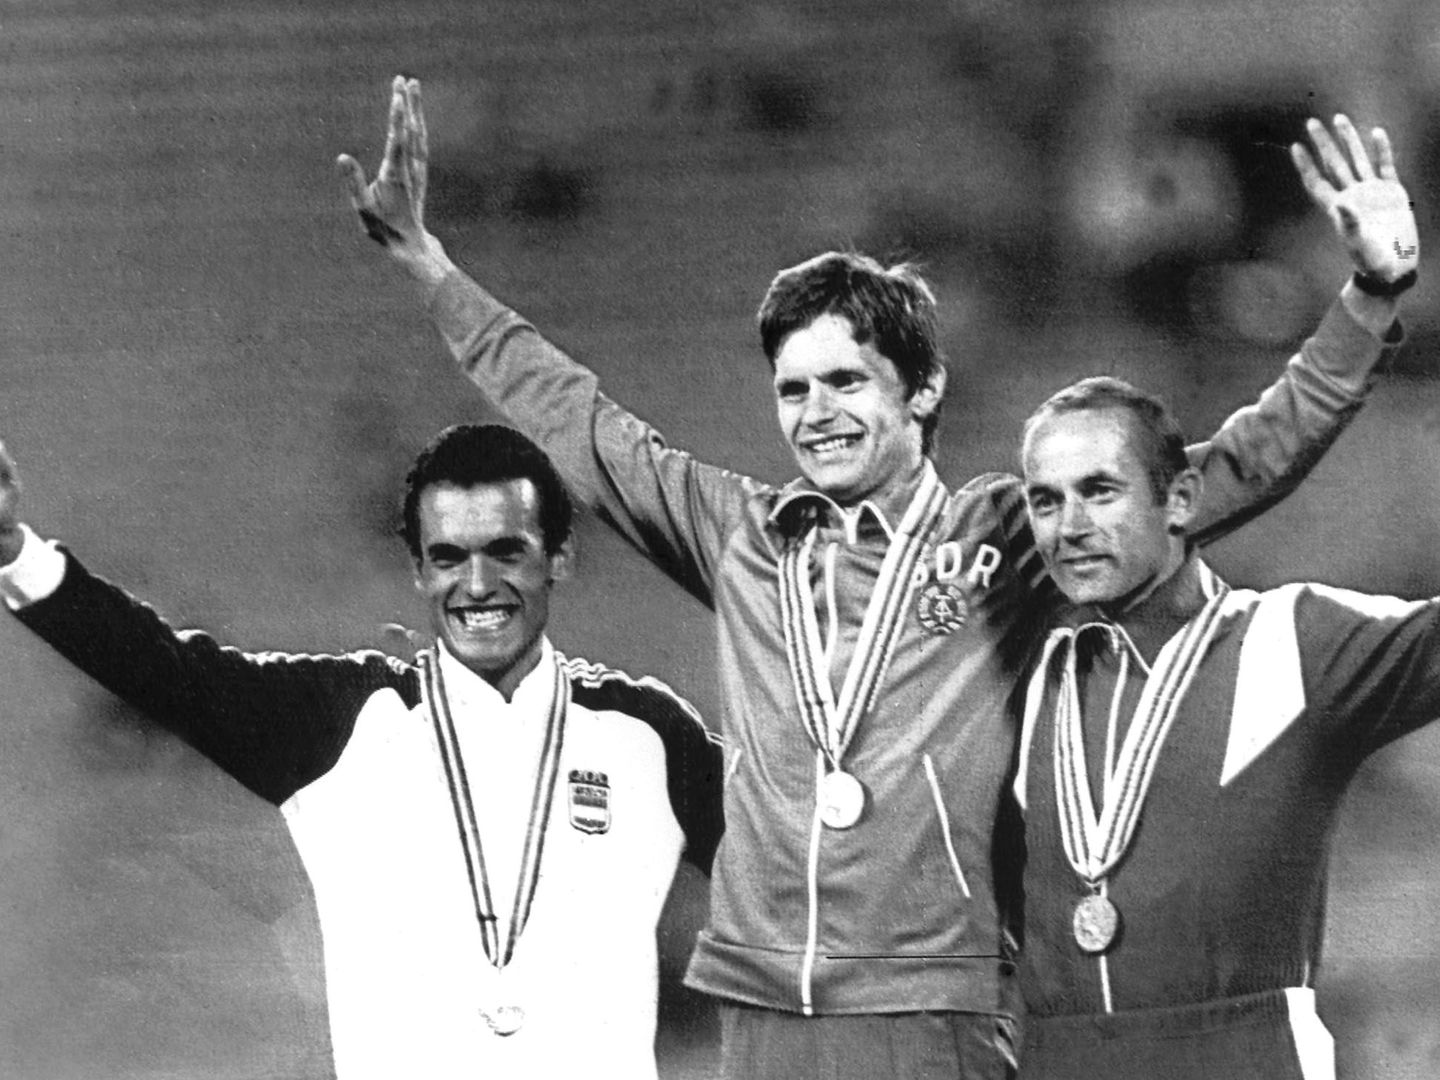 Jordi Llopart (a la izquierda) comparte el podio de Moscú 1980 con el alemán Hartwig Gauder (oro) y el ruso Yvchenko (bronce). (Efe)